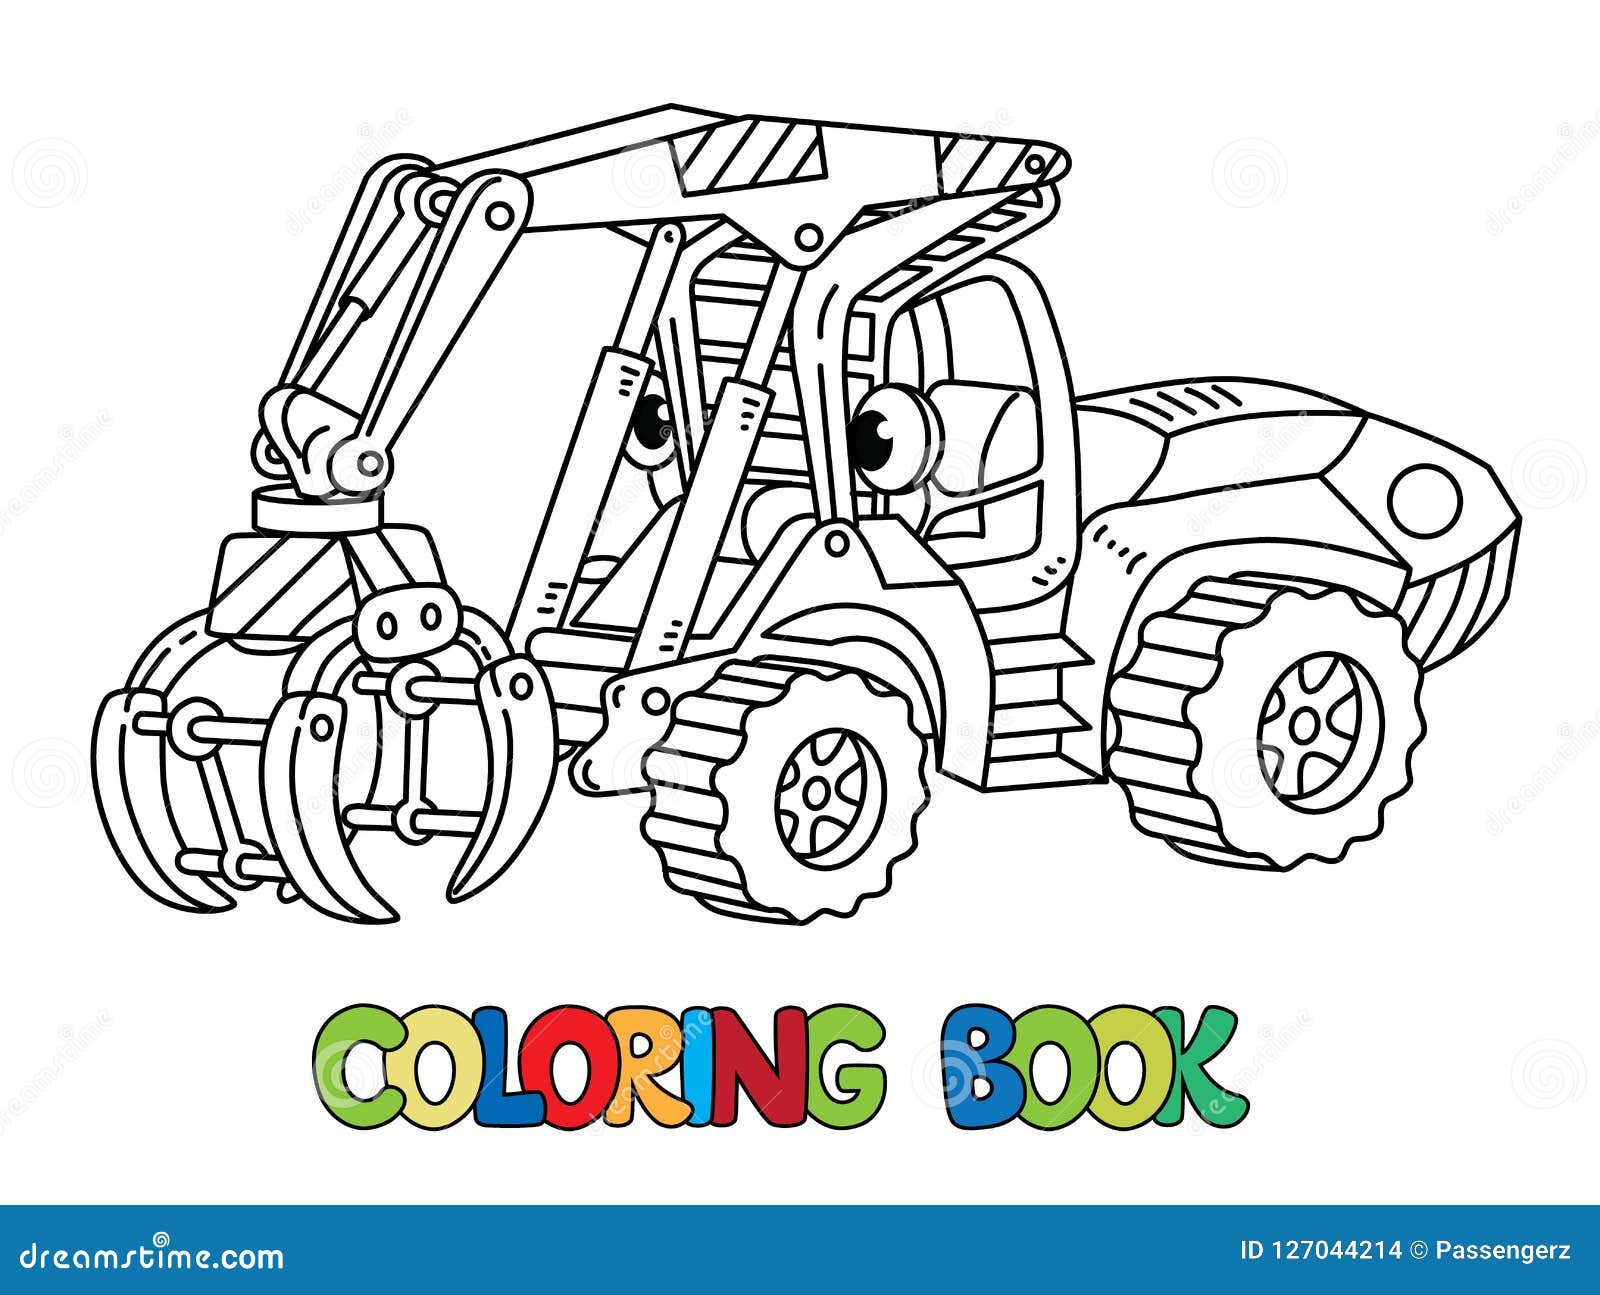 Trator pesado. veículo de brinquedo dos desenhos animados com cara  engraçada. página do livro para colorir para crianças.